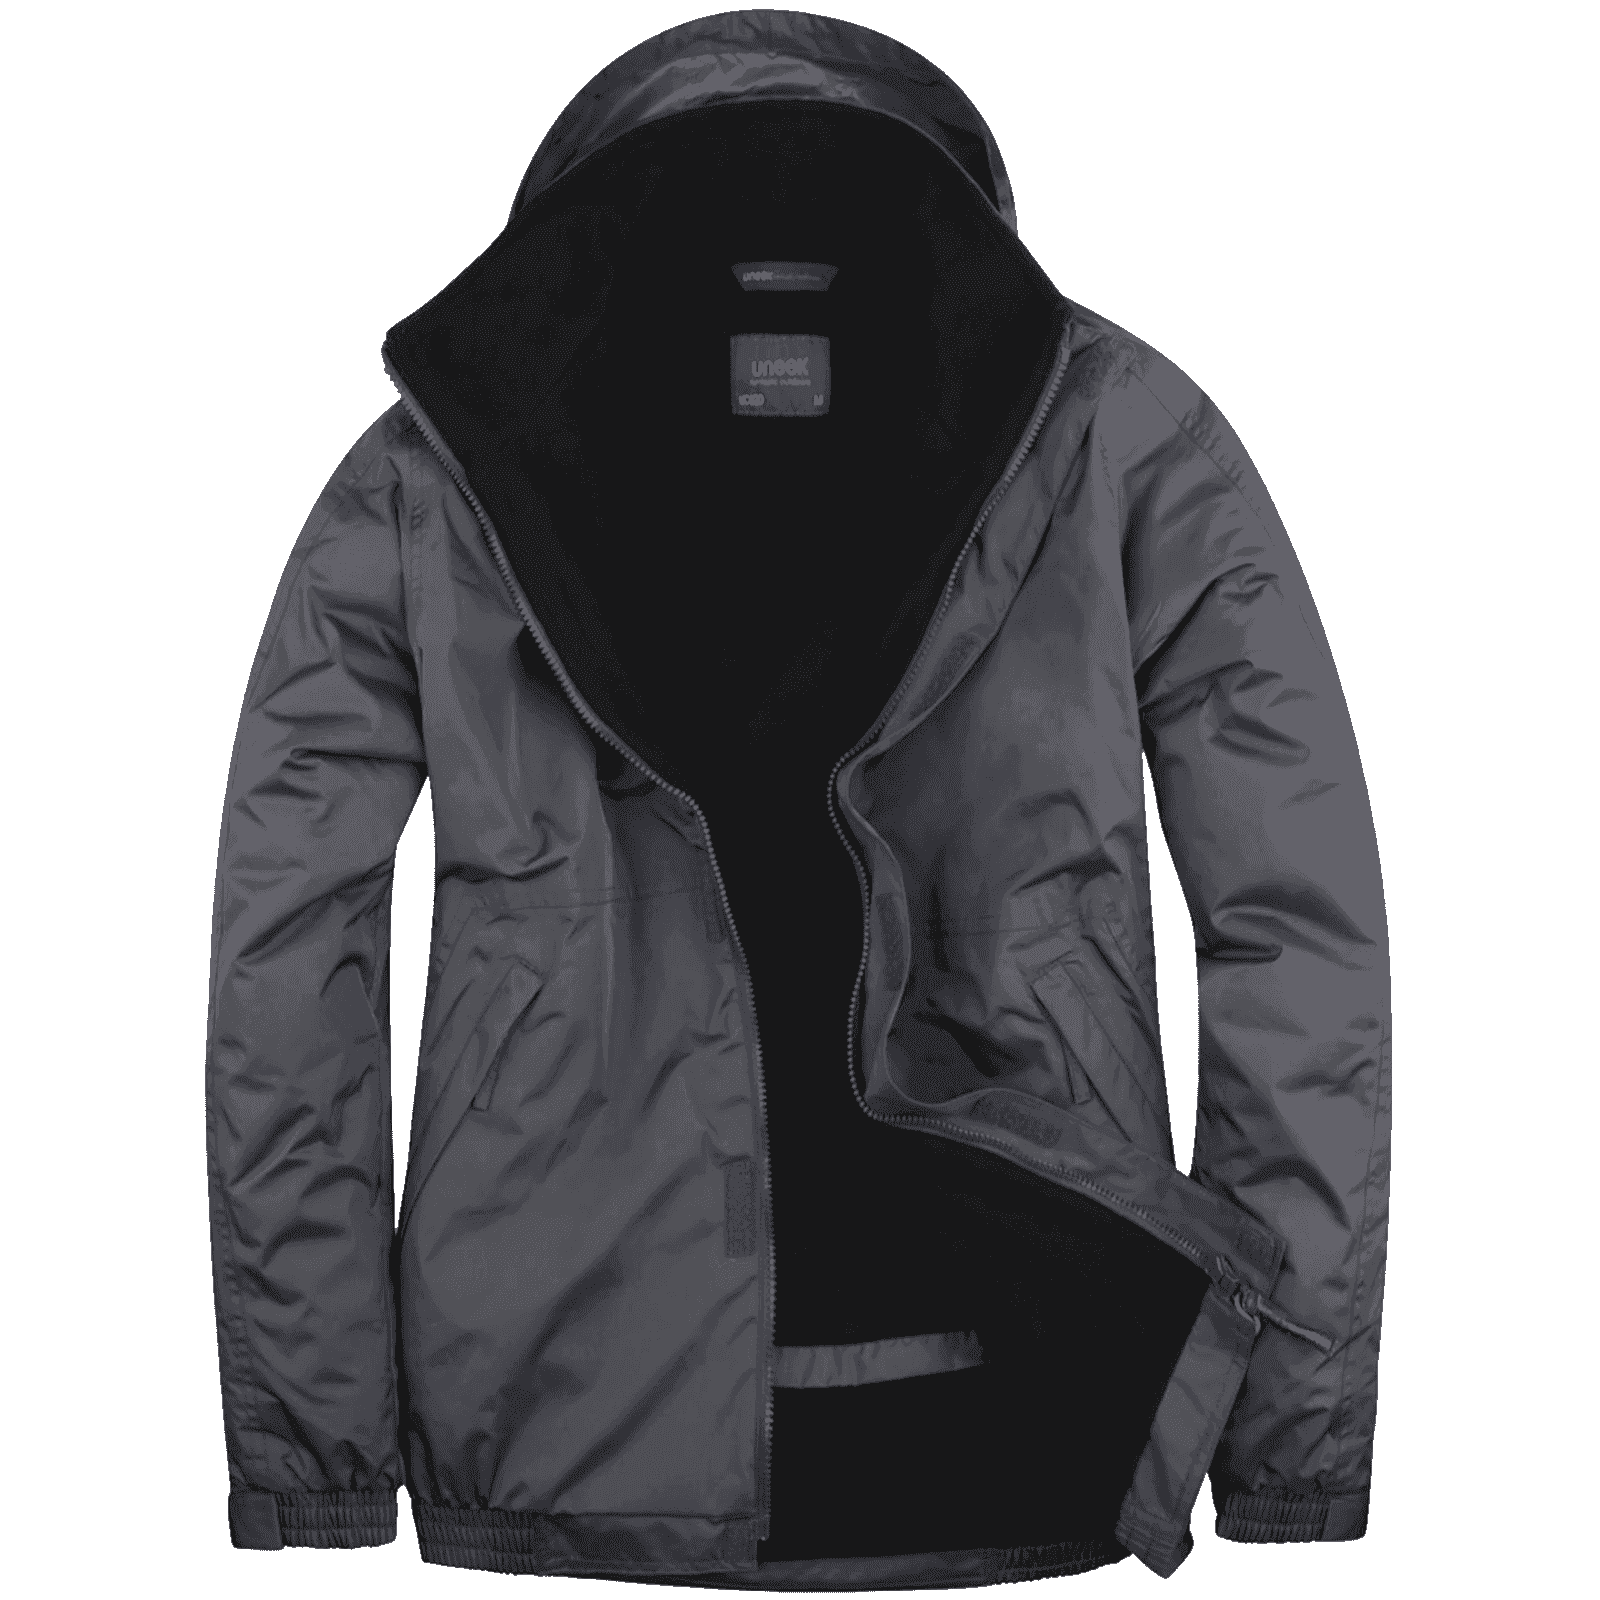 Waterproof Work Jacket UC620 Uneek Deep Grey/Black